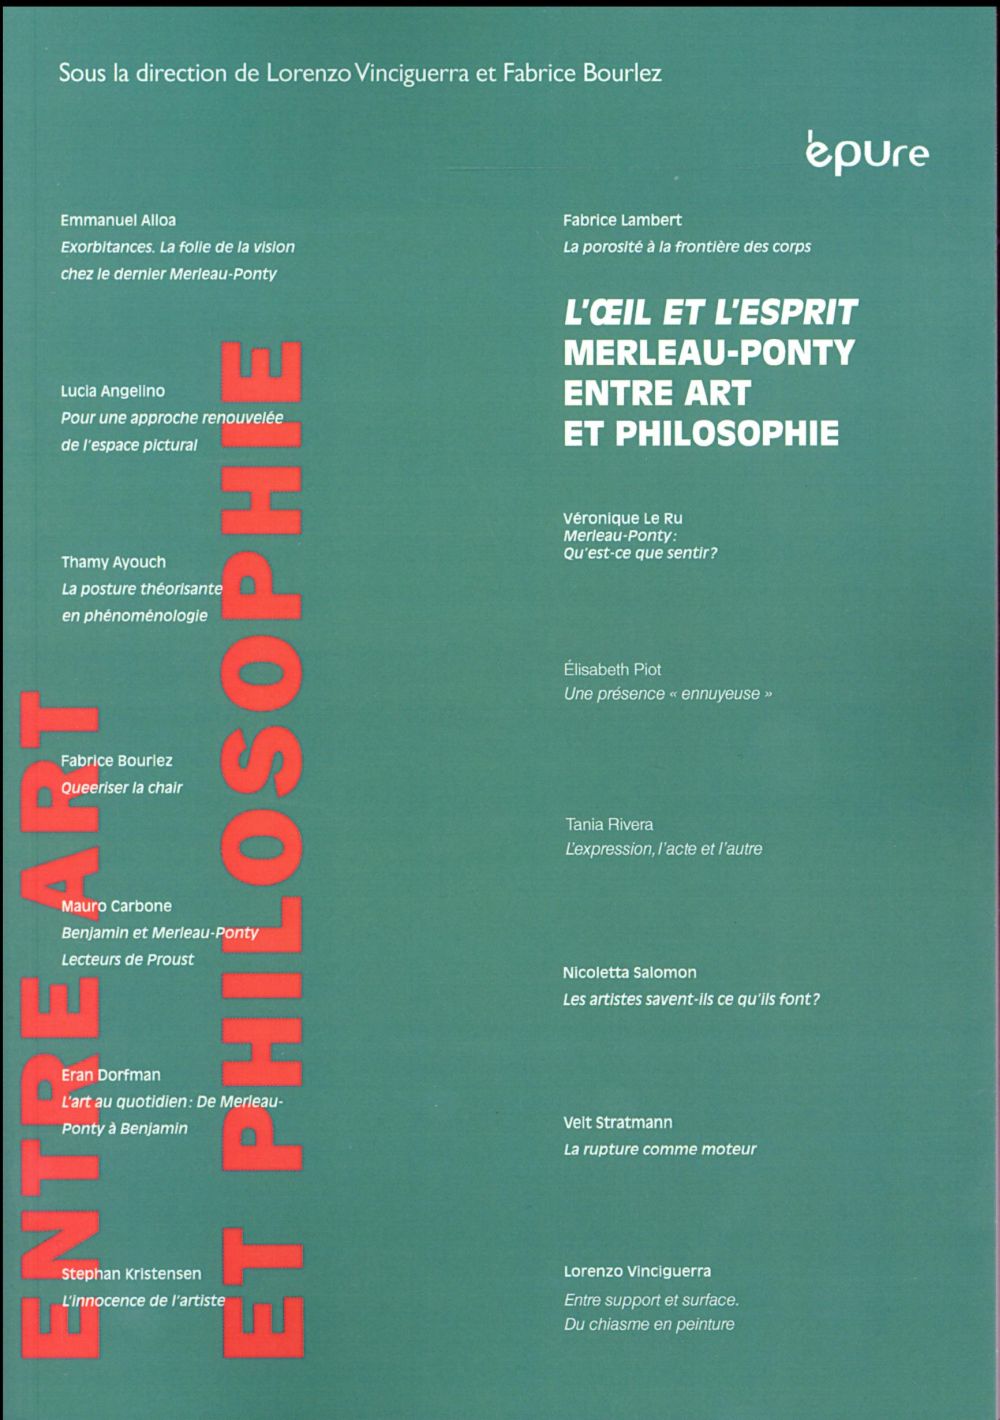 "L'OEIL ET L'ESPRIT" - MAURICE MERLEAU-PONTY ENTRE ART ET PHILOSOPHIE